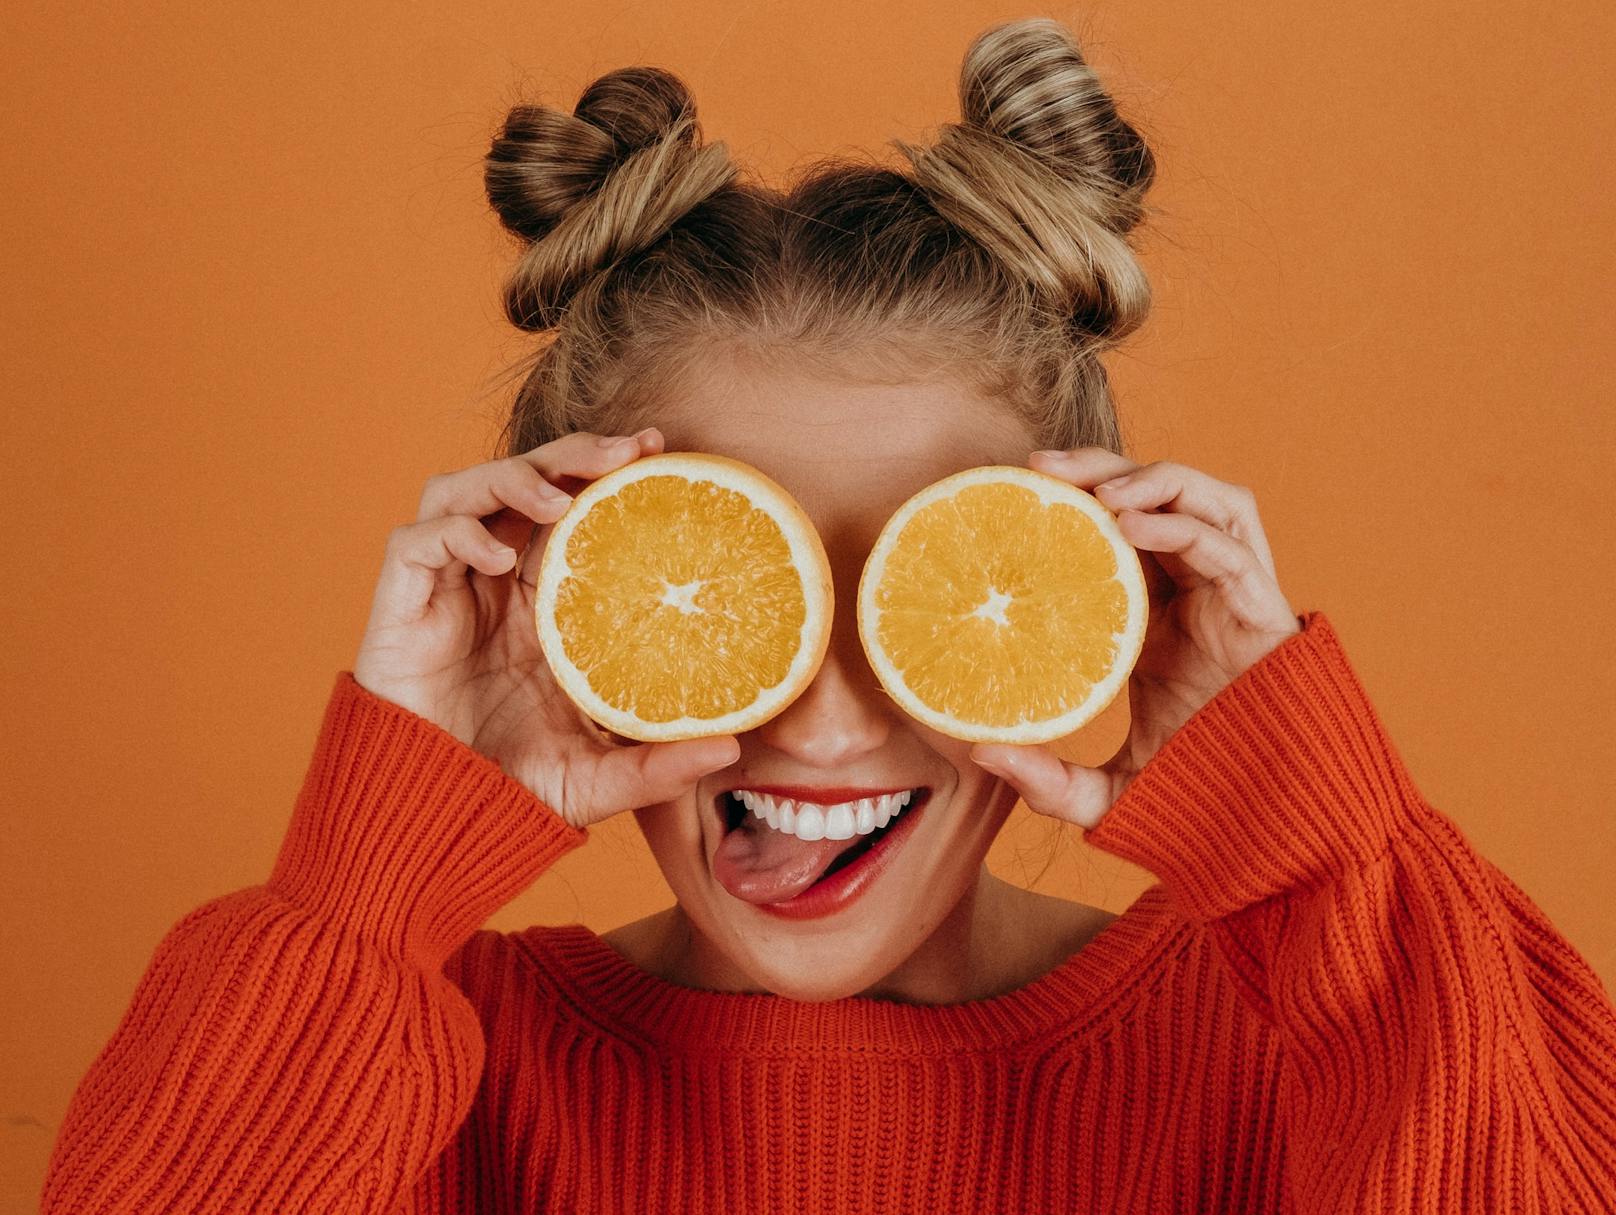 <strong>Orange:&nbsp;</strong>Auch dieses säurehaltige Obst kann deine empfindliche Speiseröhre am Morgen überfordern. Greife auf nüchternen Magen darum lieber zu Früchten wie Äpfel, roten Beeren oder Wassermelone.